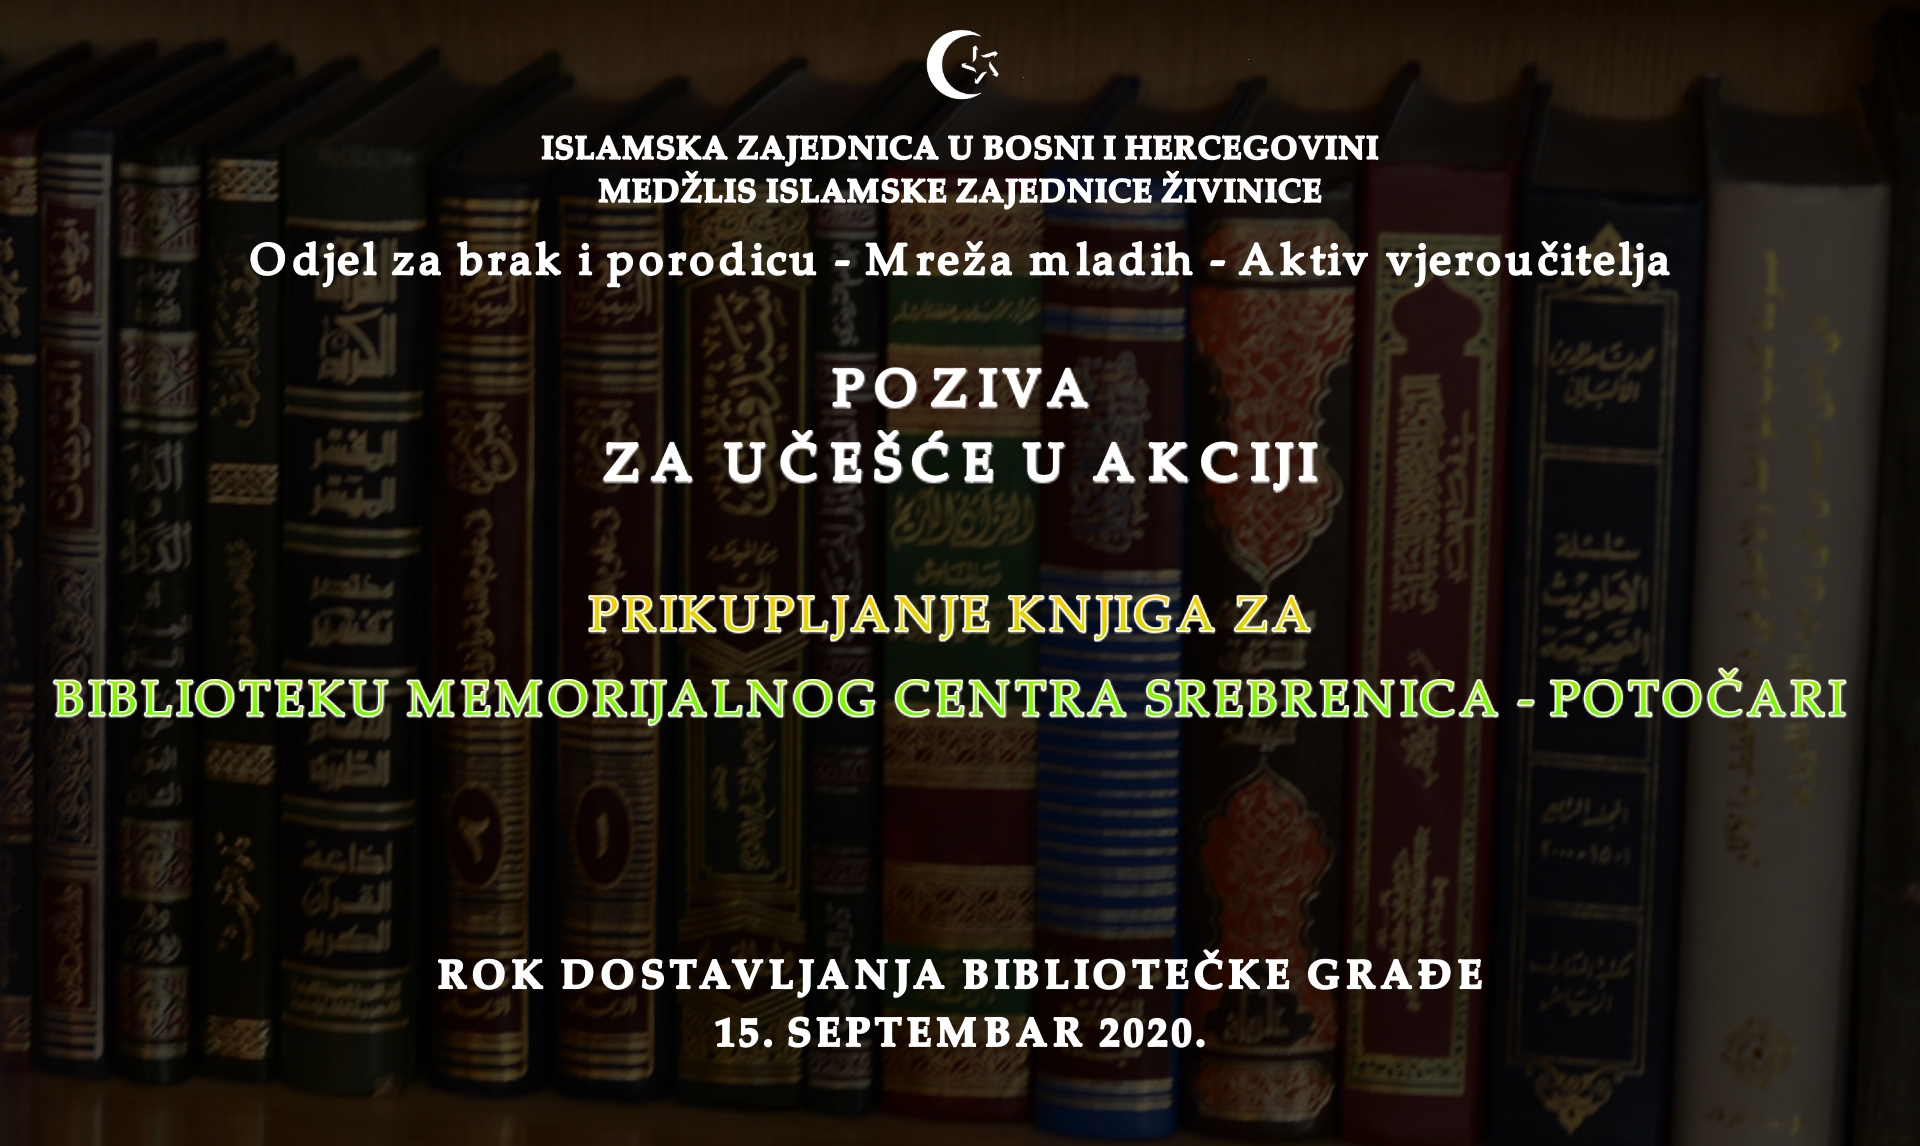 Akcija prikupljanja knjiga za biblioteku Memorijalnog centra Srebrenica – Potočari